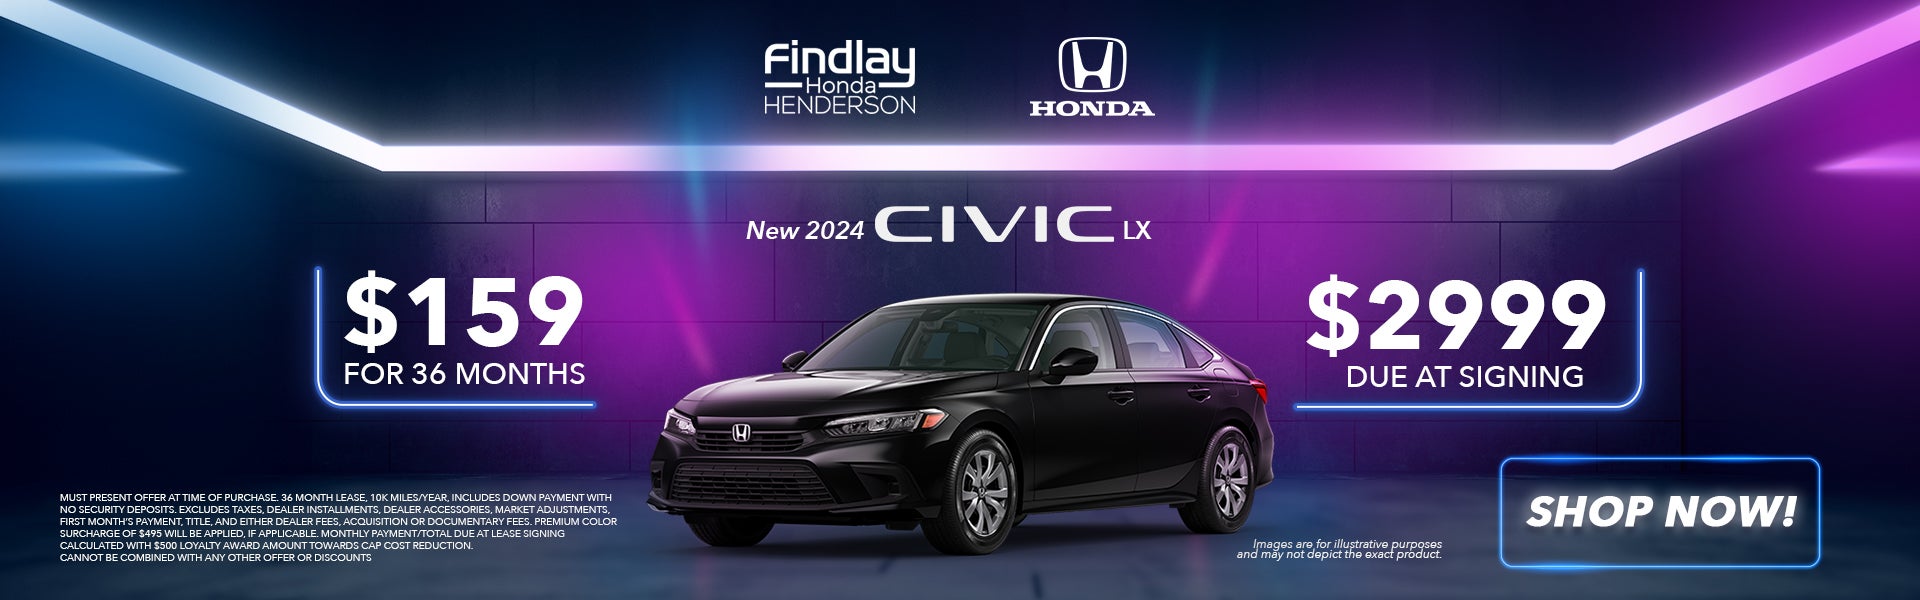 New 2024 Civic LX